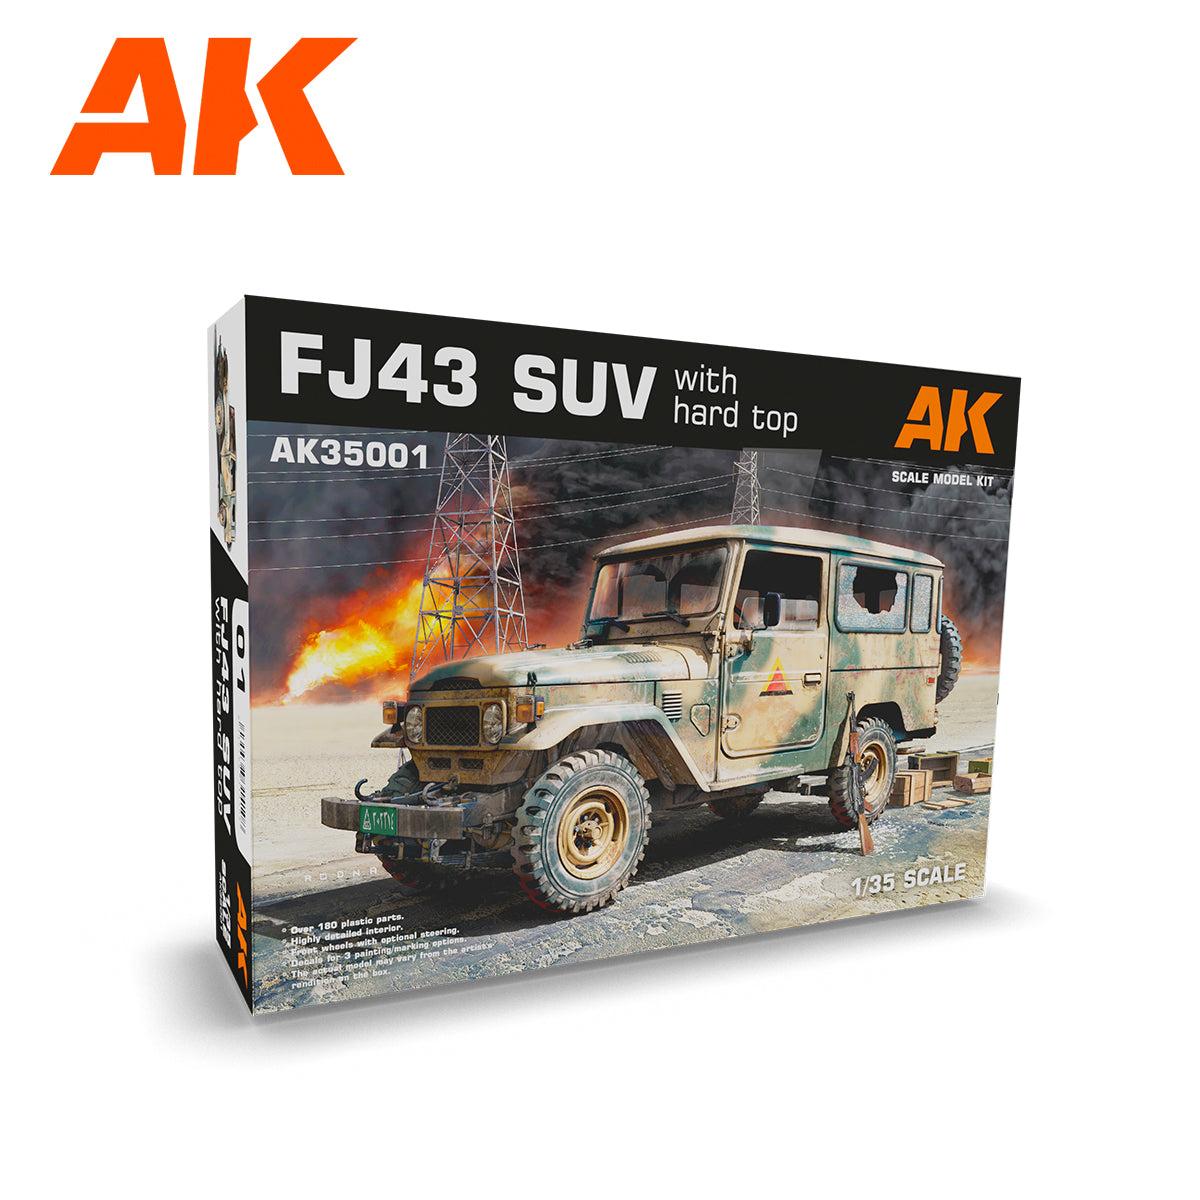 AK35001 - FJ43 SUV with hard top - 1/35